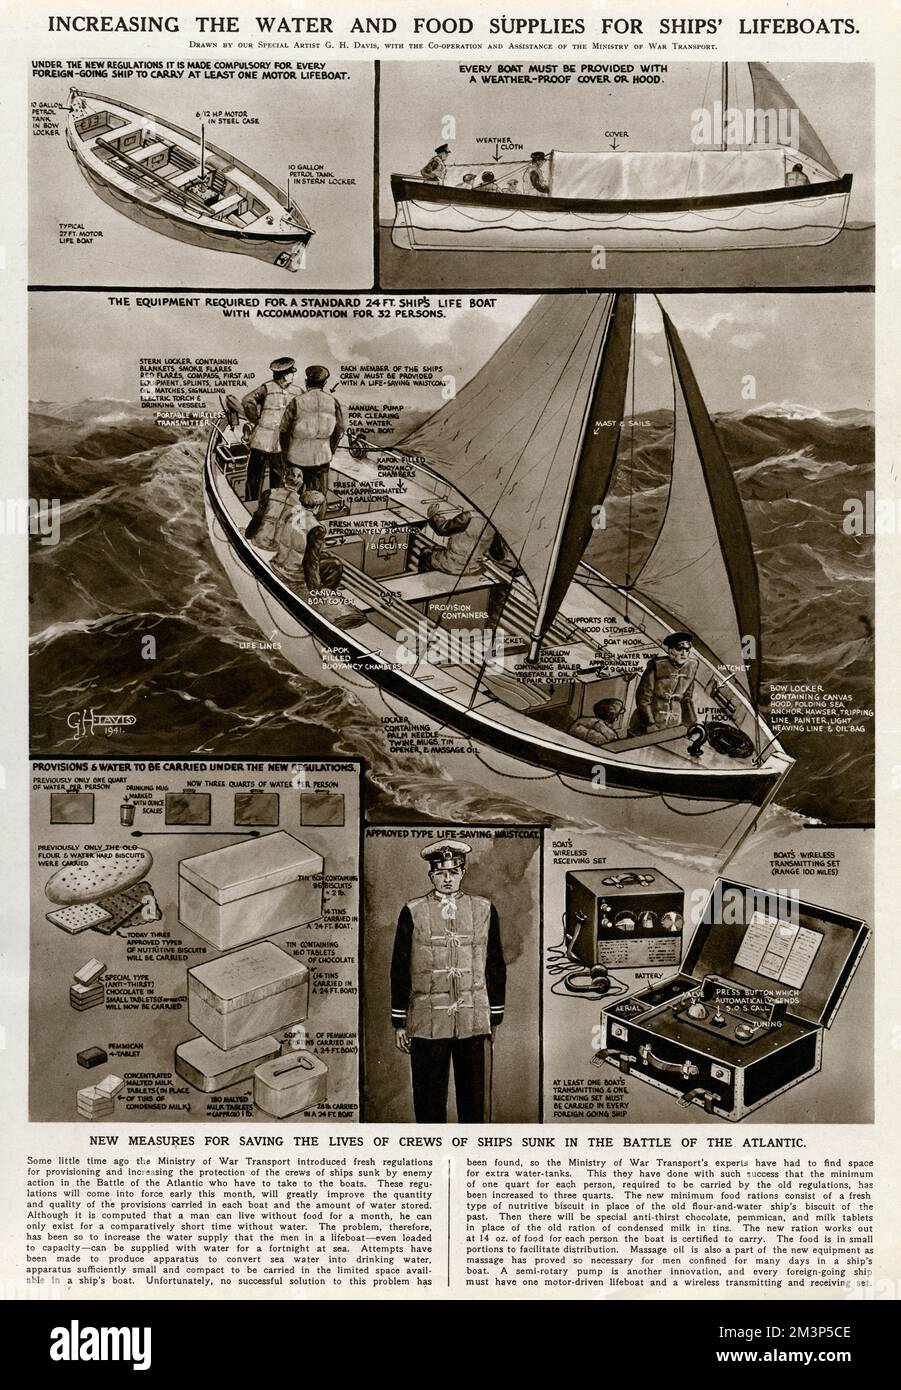 Erhöhung der Wasser- und Nahrungsmittelversorgung für Rettungsboote während des Zweiten Weltkriegs. Neue Maßnahmen zur Rettung der Besatzungen von Schiffen, die in der Schlacht um den Atlantik versenkt wurden. Datum: 1941 Stockfoto